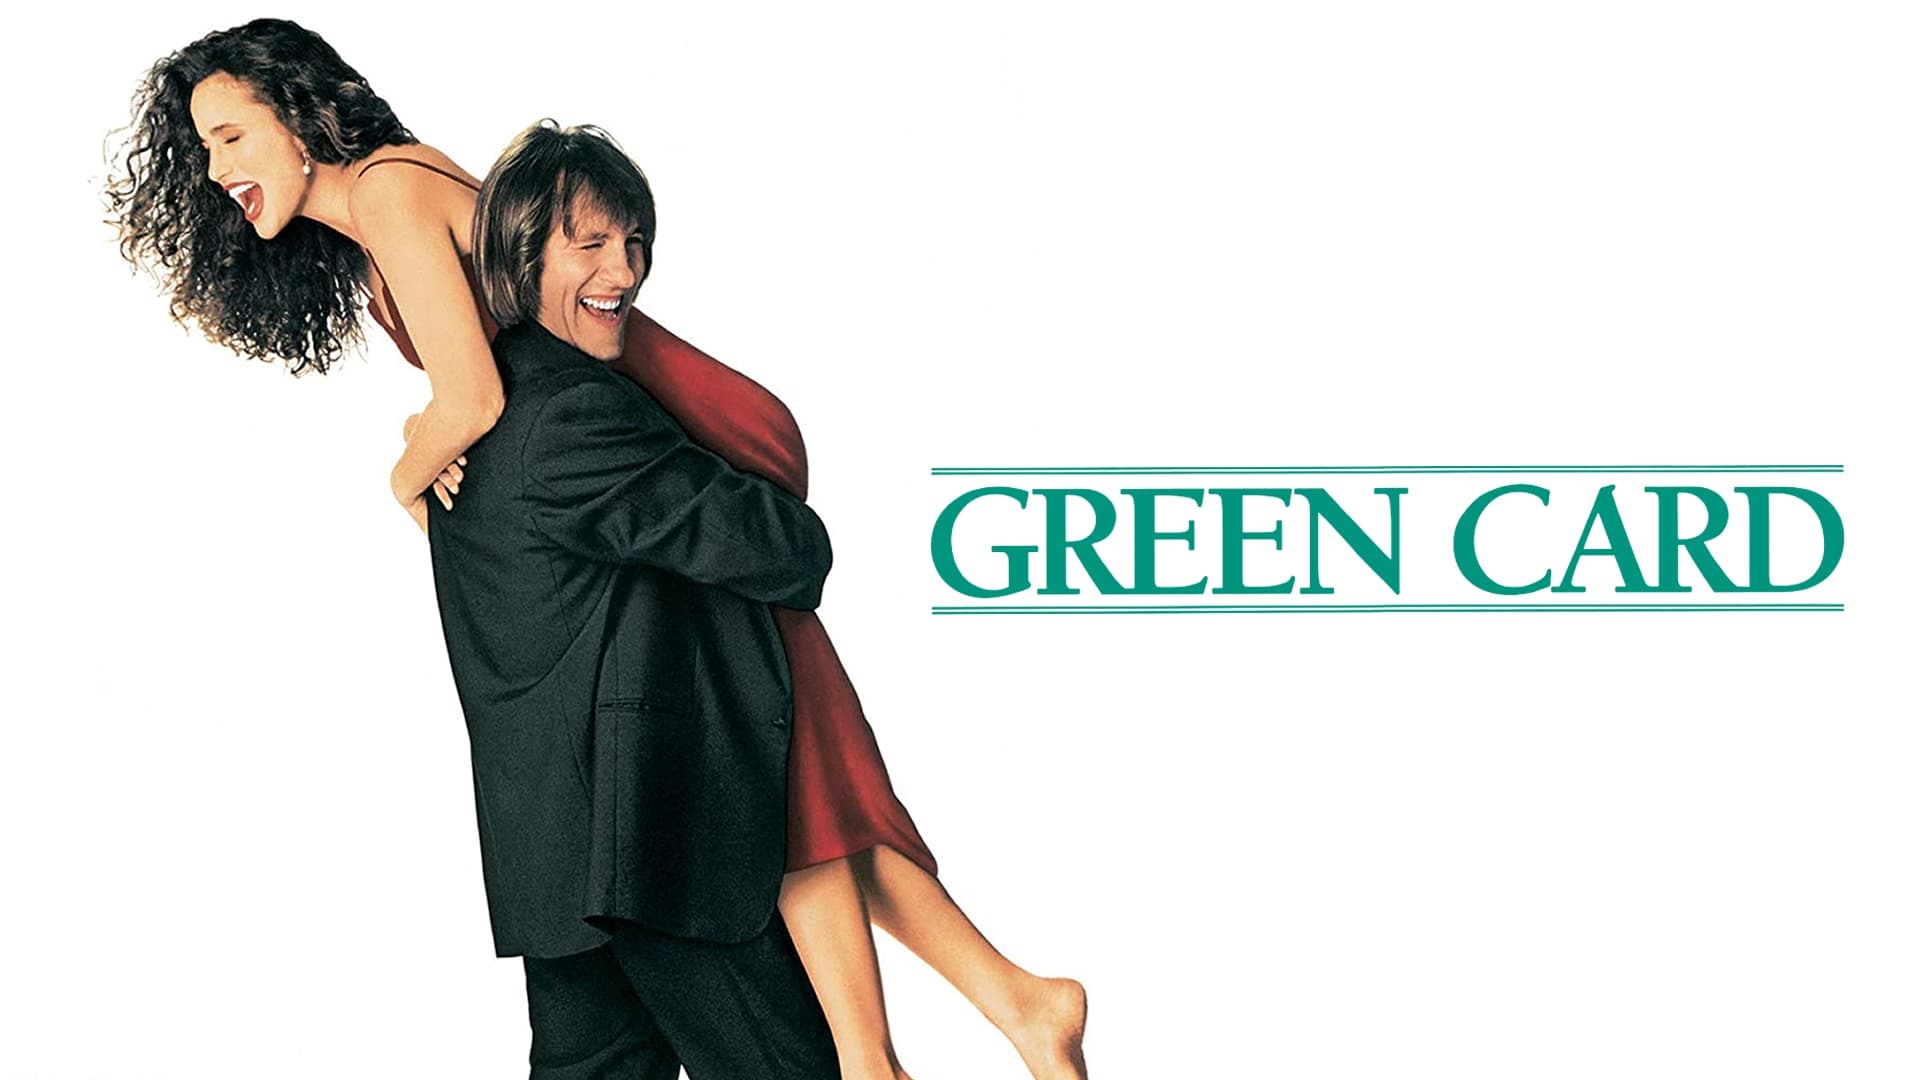 Green Card (1990)